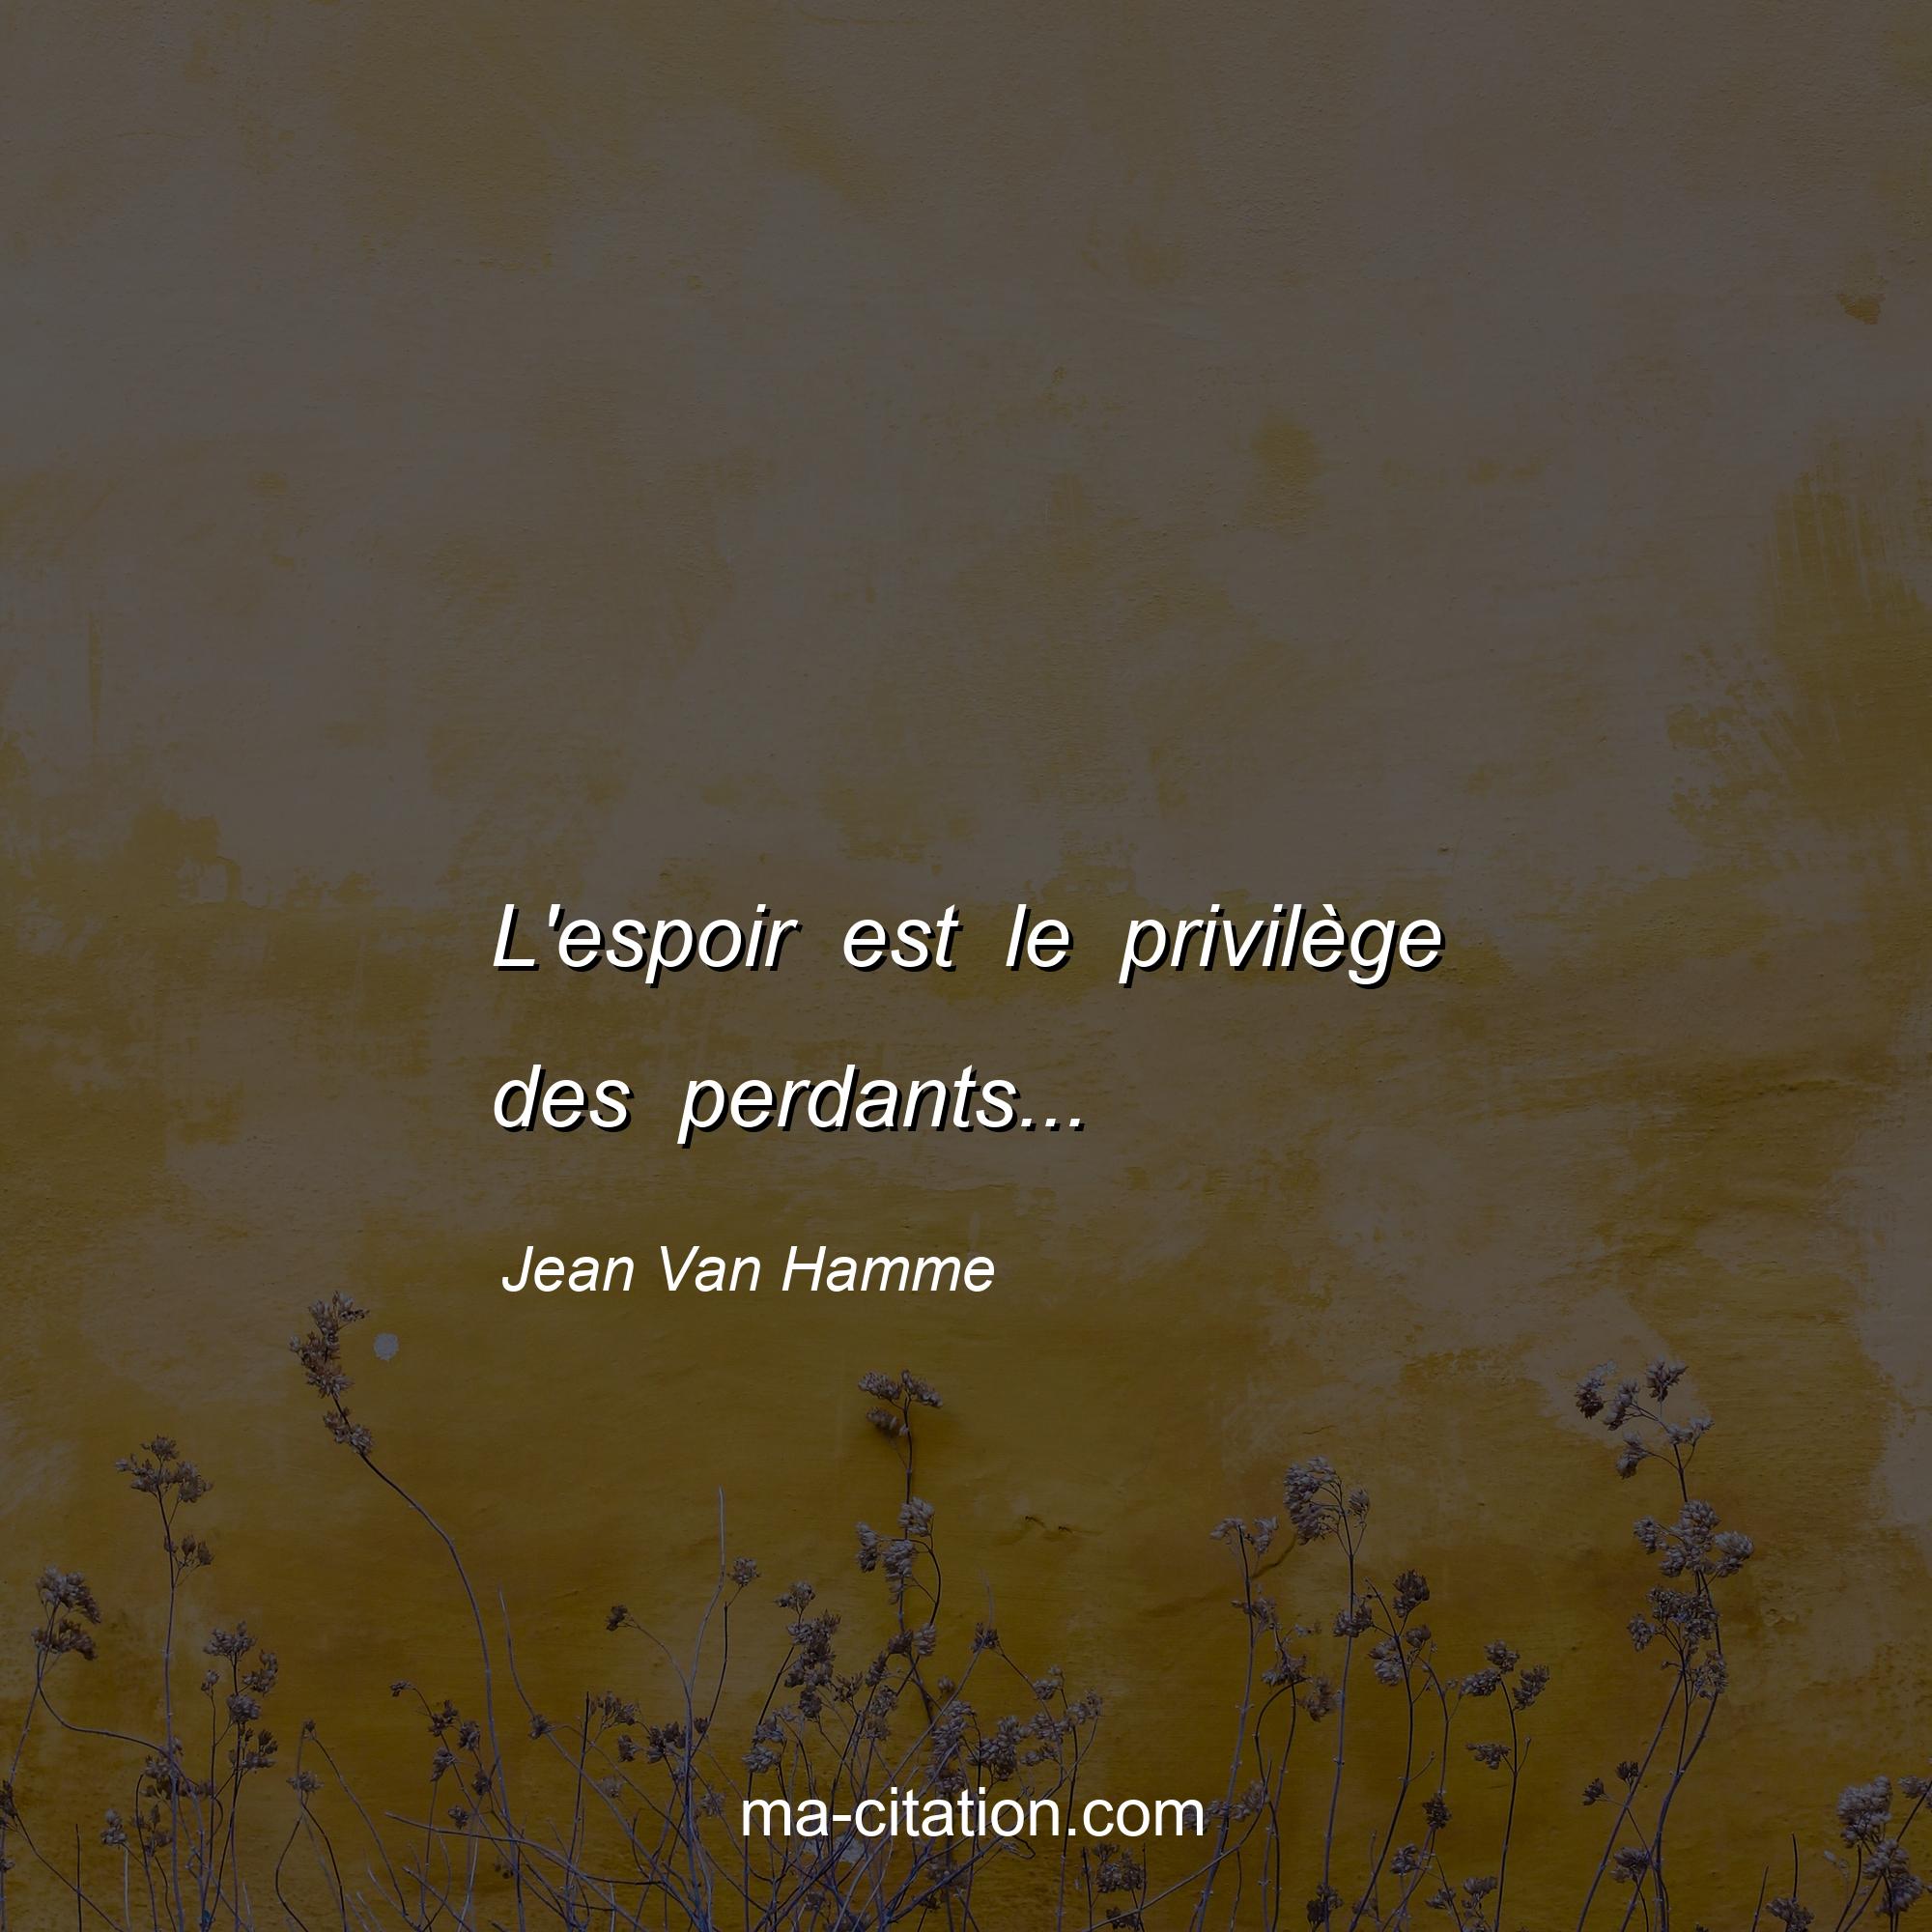 Jean Van Hamme : L'espoir est le privilège des perdants...